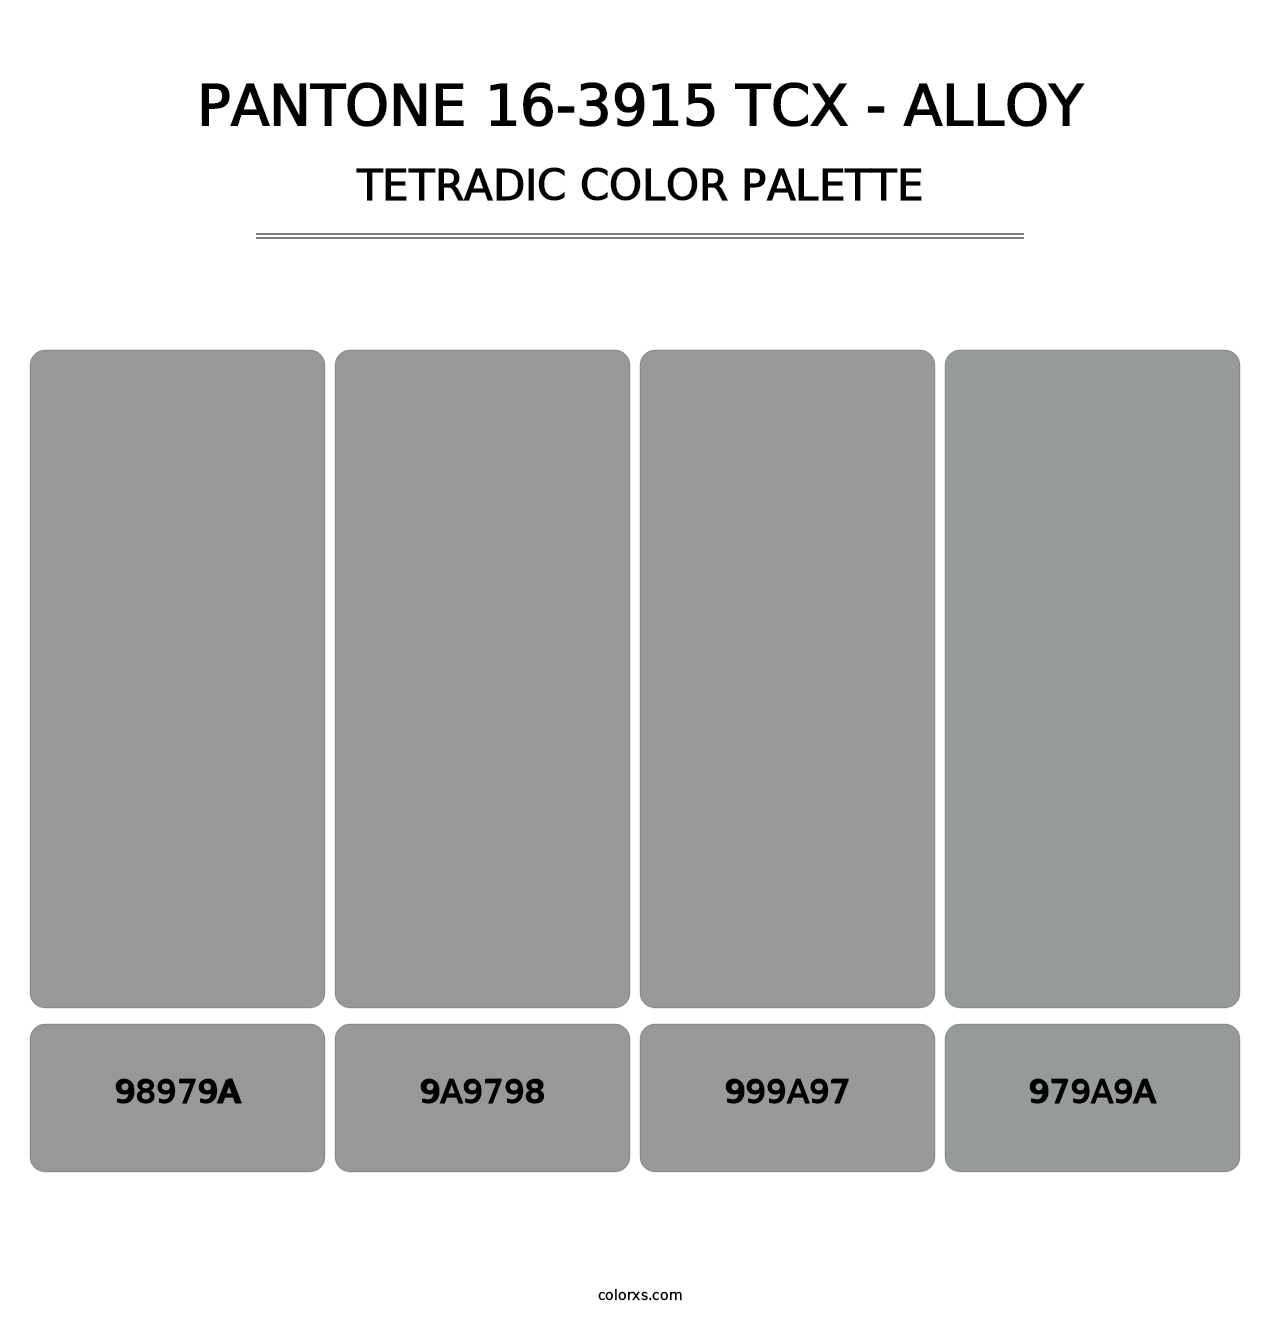 PANTONE 16-3915 TCX - Alloy - Tetradic Color Palette